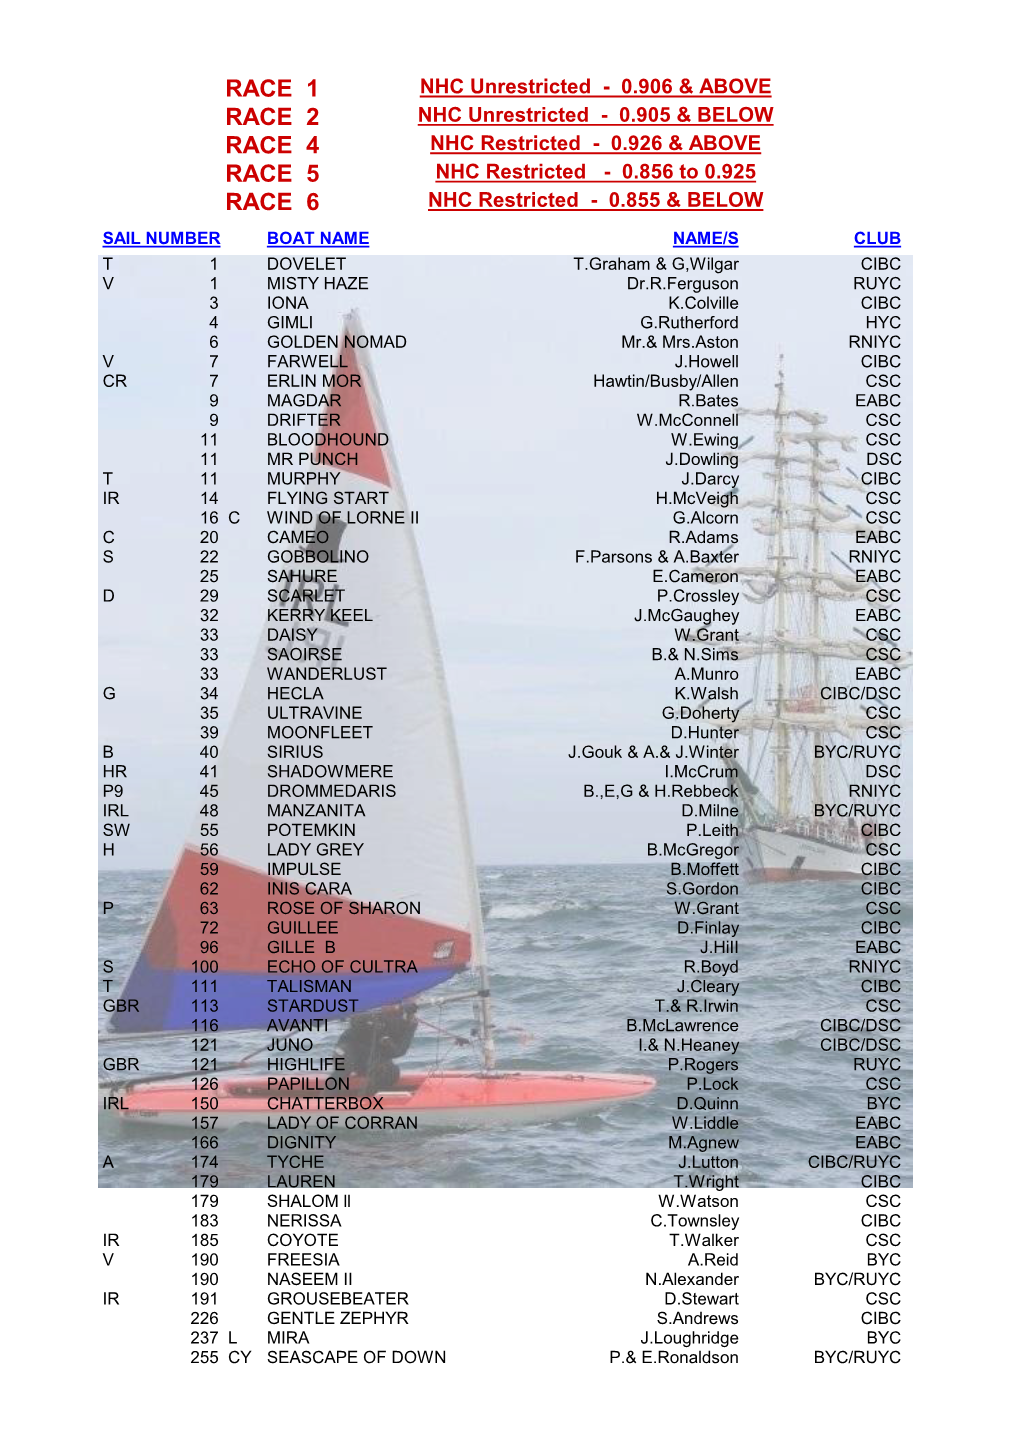 2016 Boat List